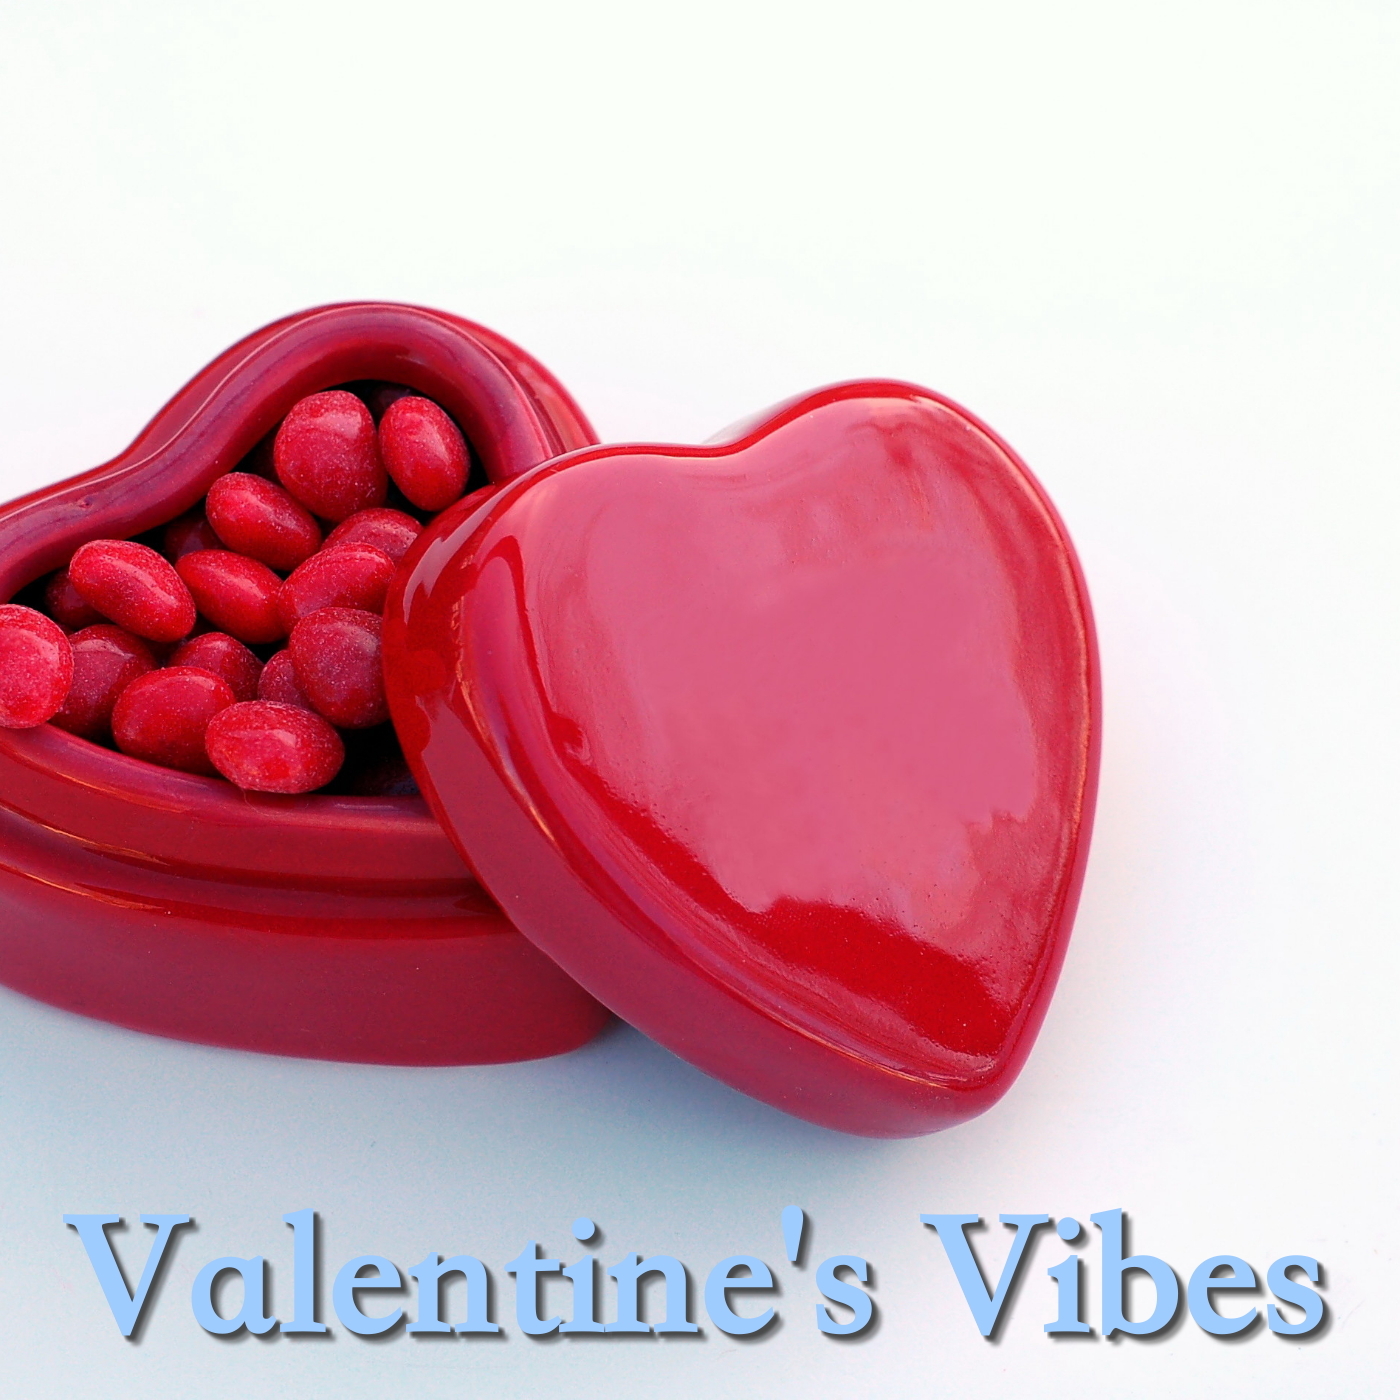 Valentine's Vibes